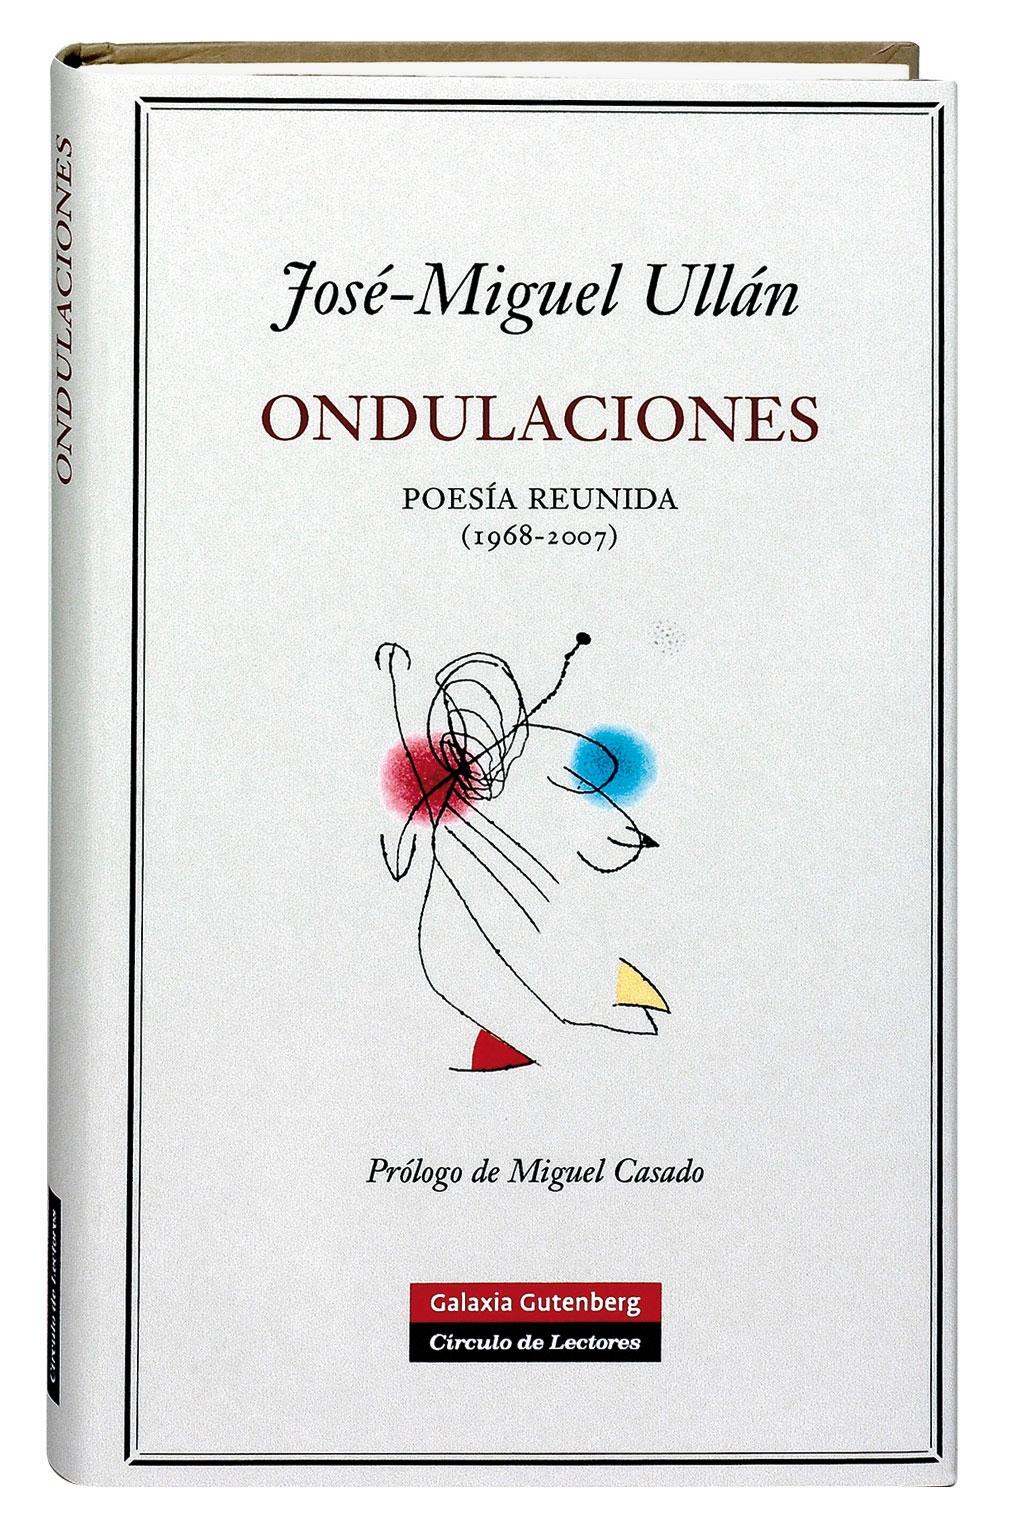 Ondulaciones "Poesía reunida 1968-2007"